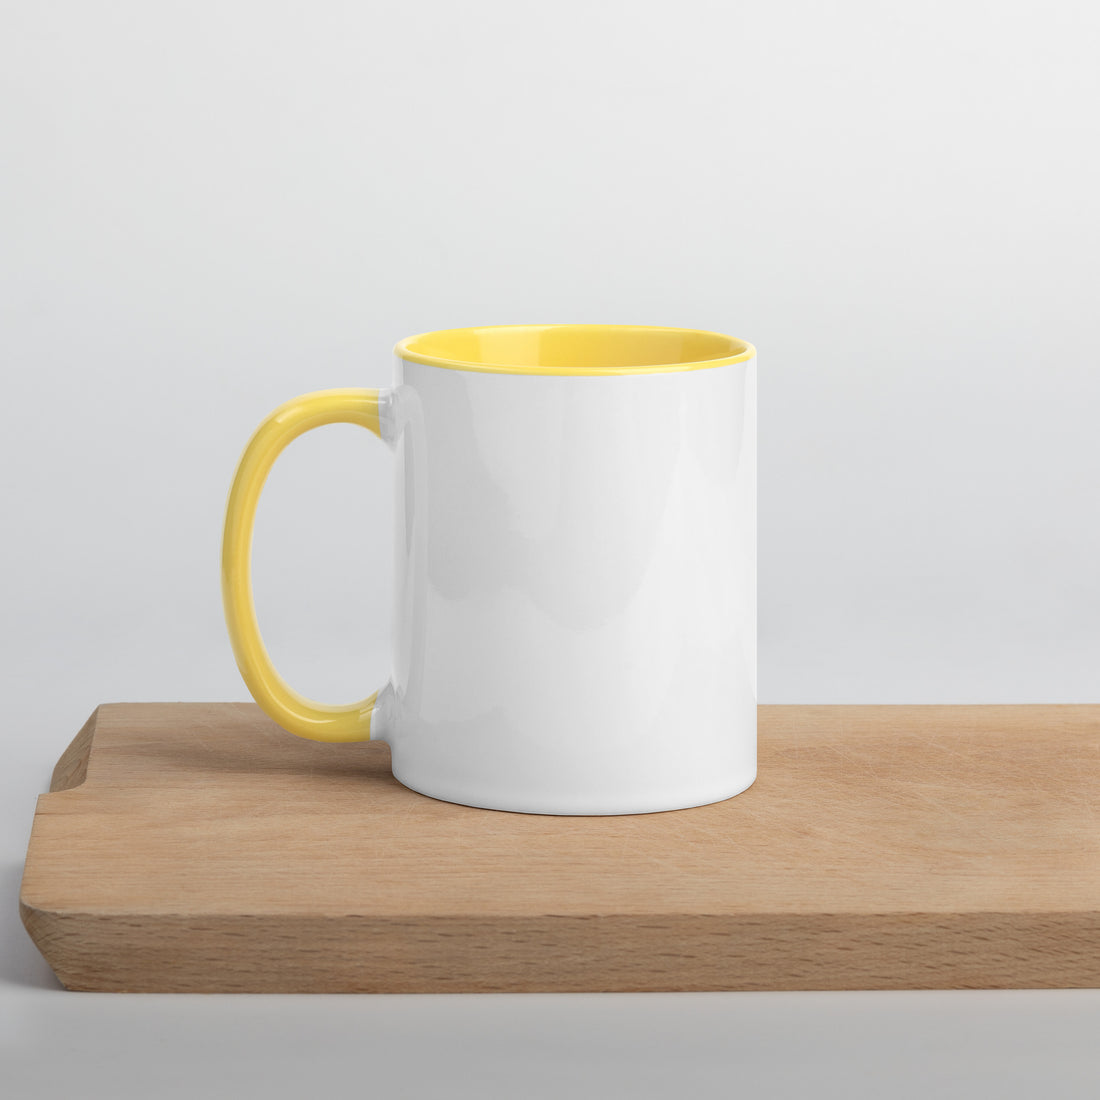 Mug with Color Inside Golden Retriever